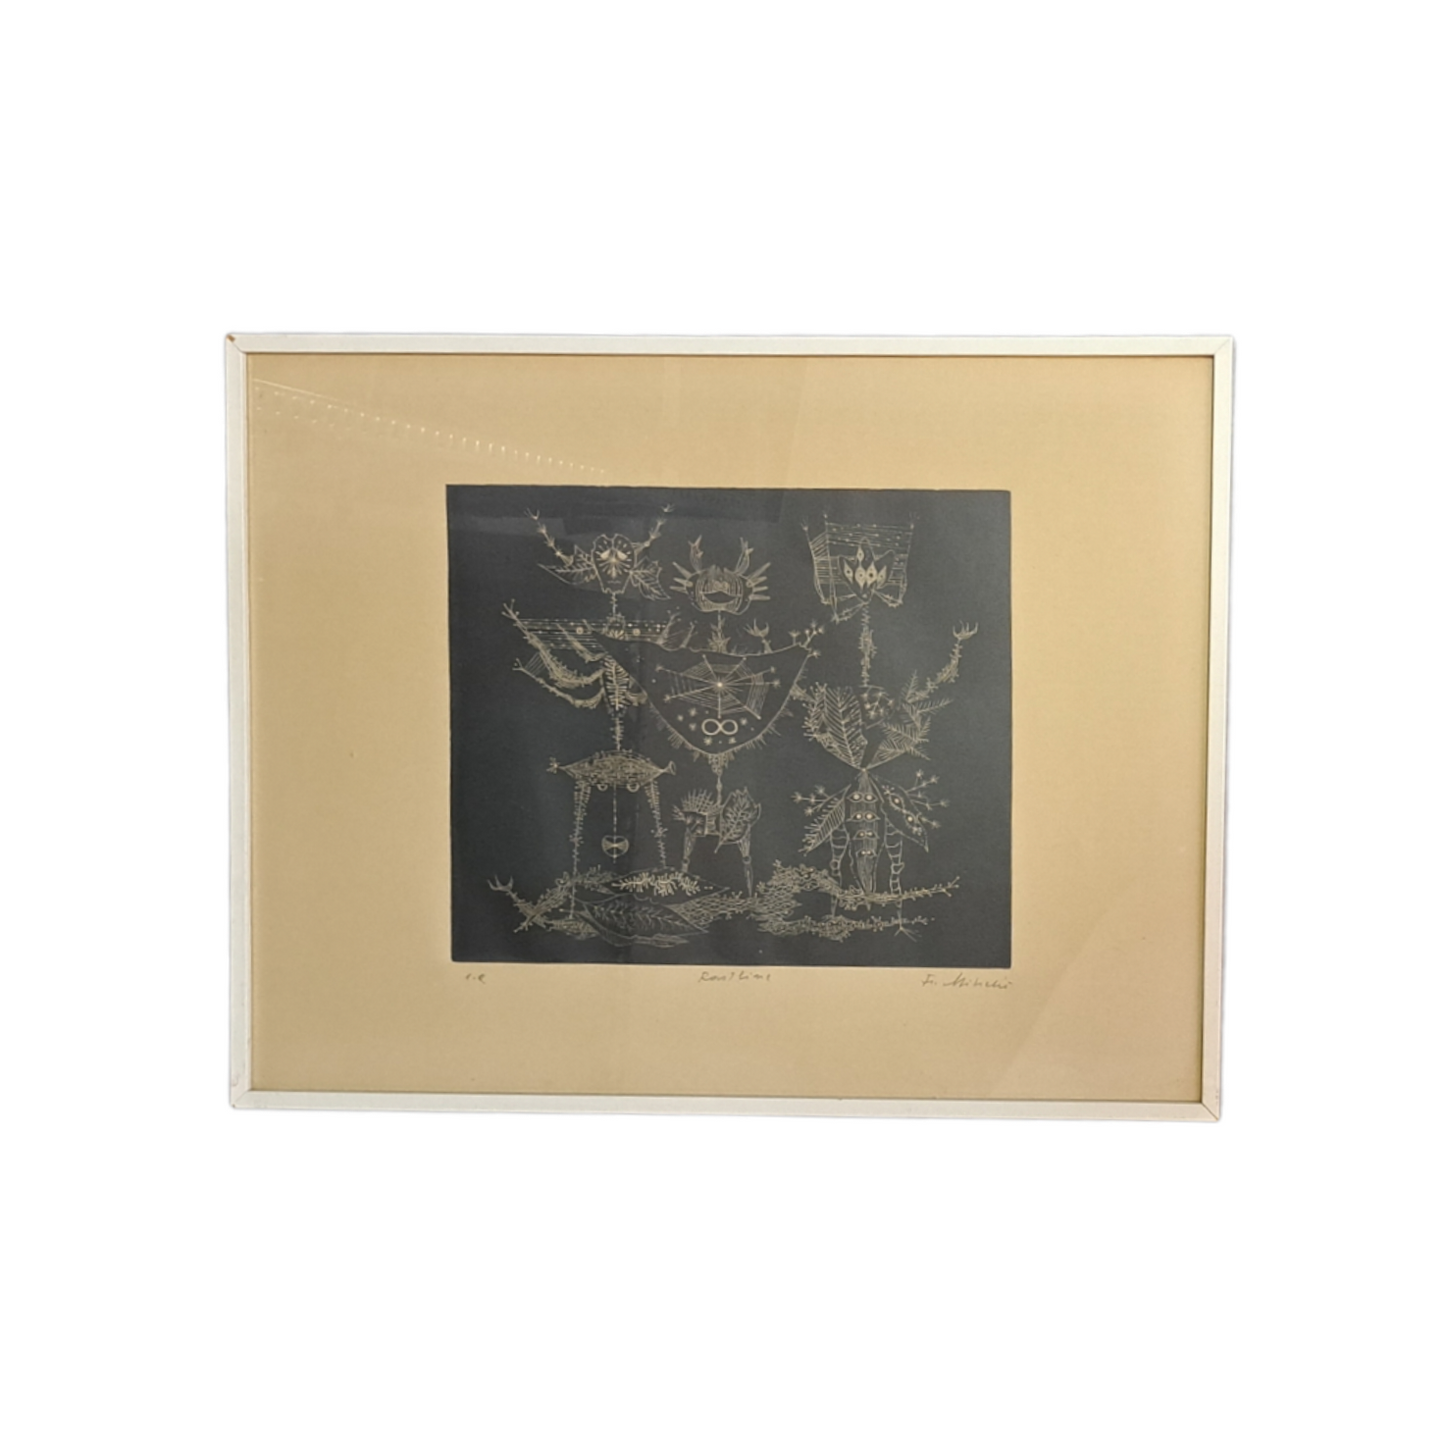 France Mihelič - grafika, Rastline, 73 x 53 cm